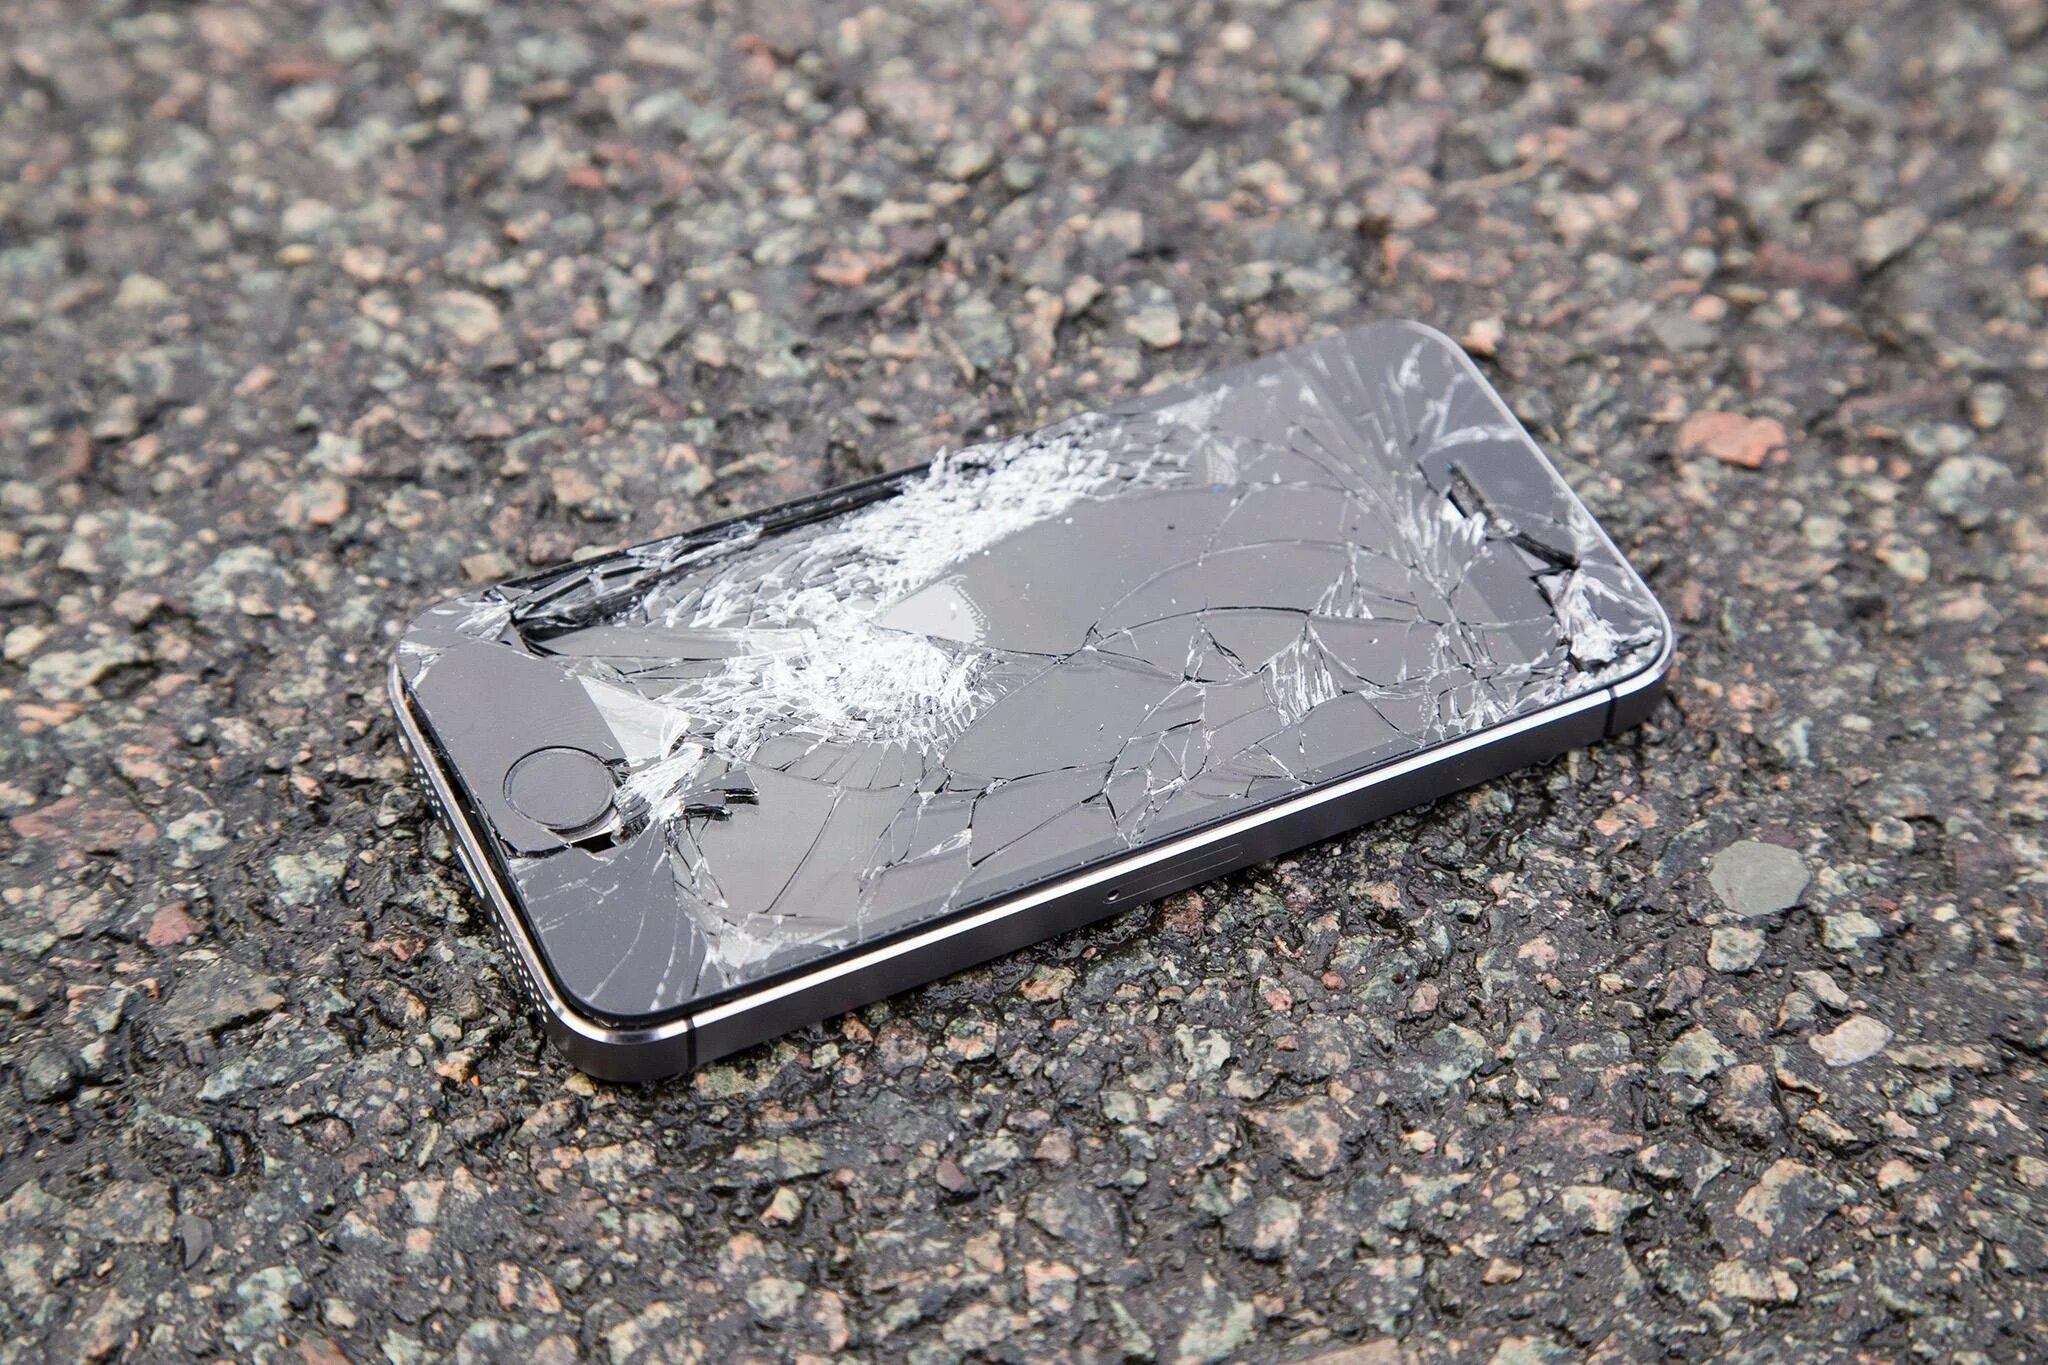 Разбила новый телефон. Разбитый смартфон. Сломанный айфон. Разбитый айфон.